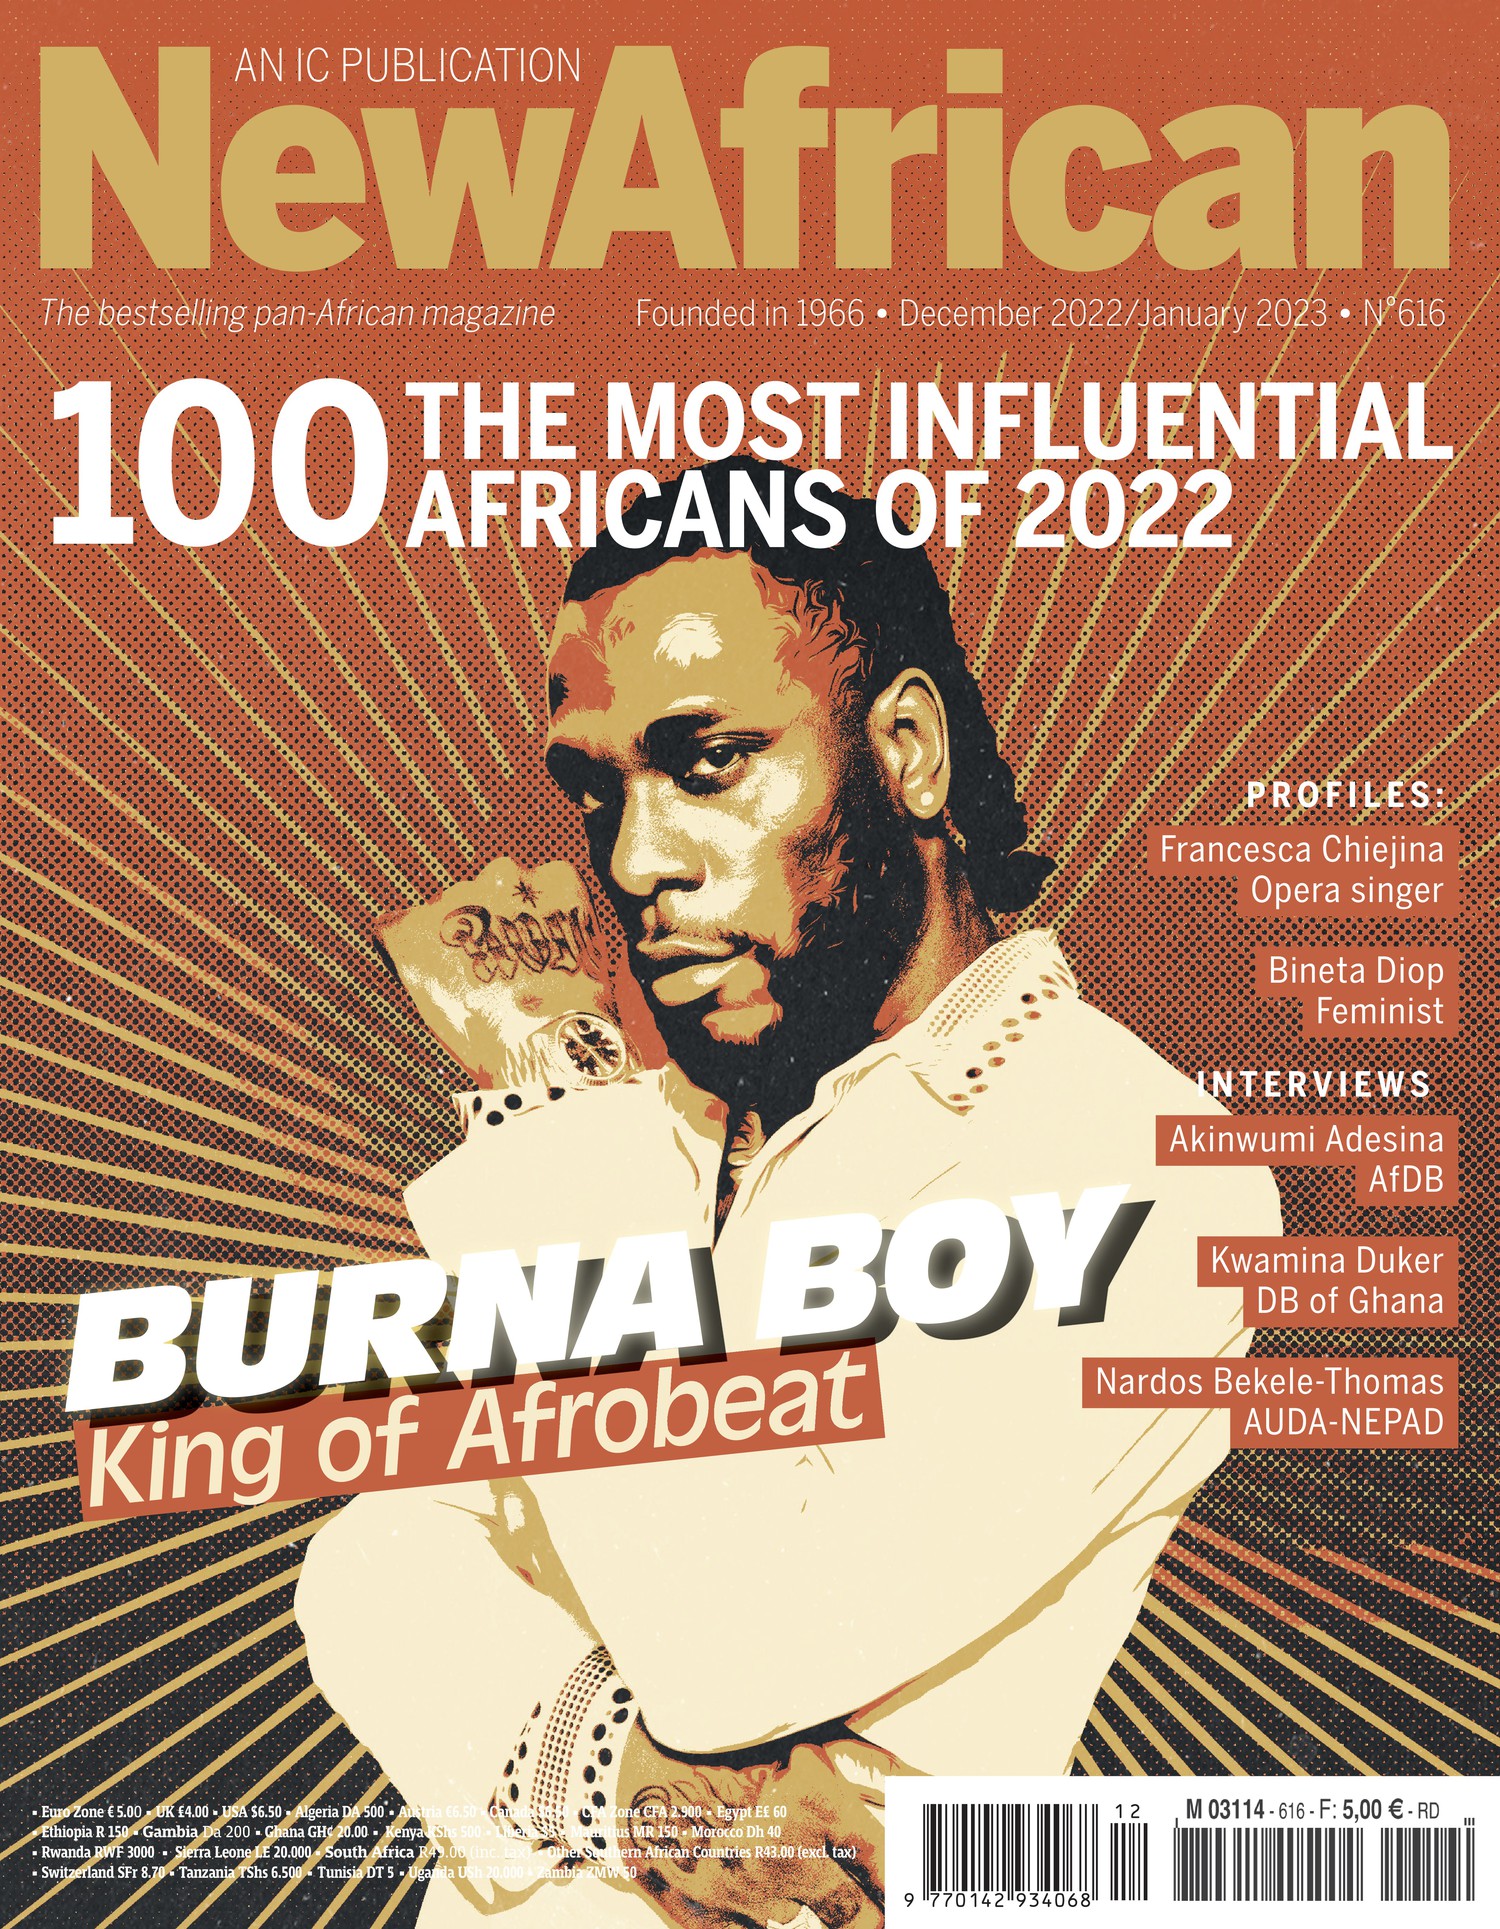 De nouveaux visages rejoignent des personnalités africaines importantes dans la liste des « 100 Africains les plus influents » de 2022